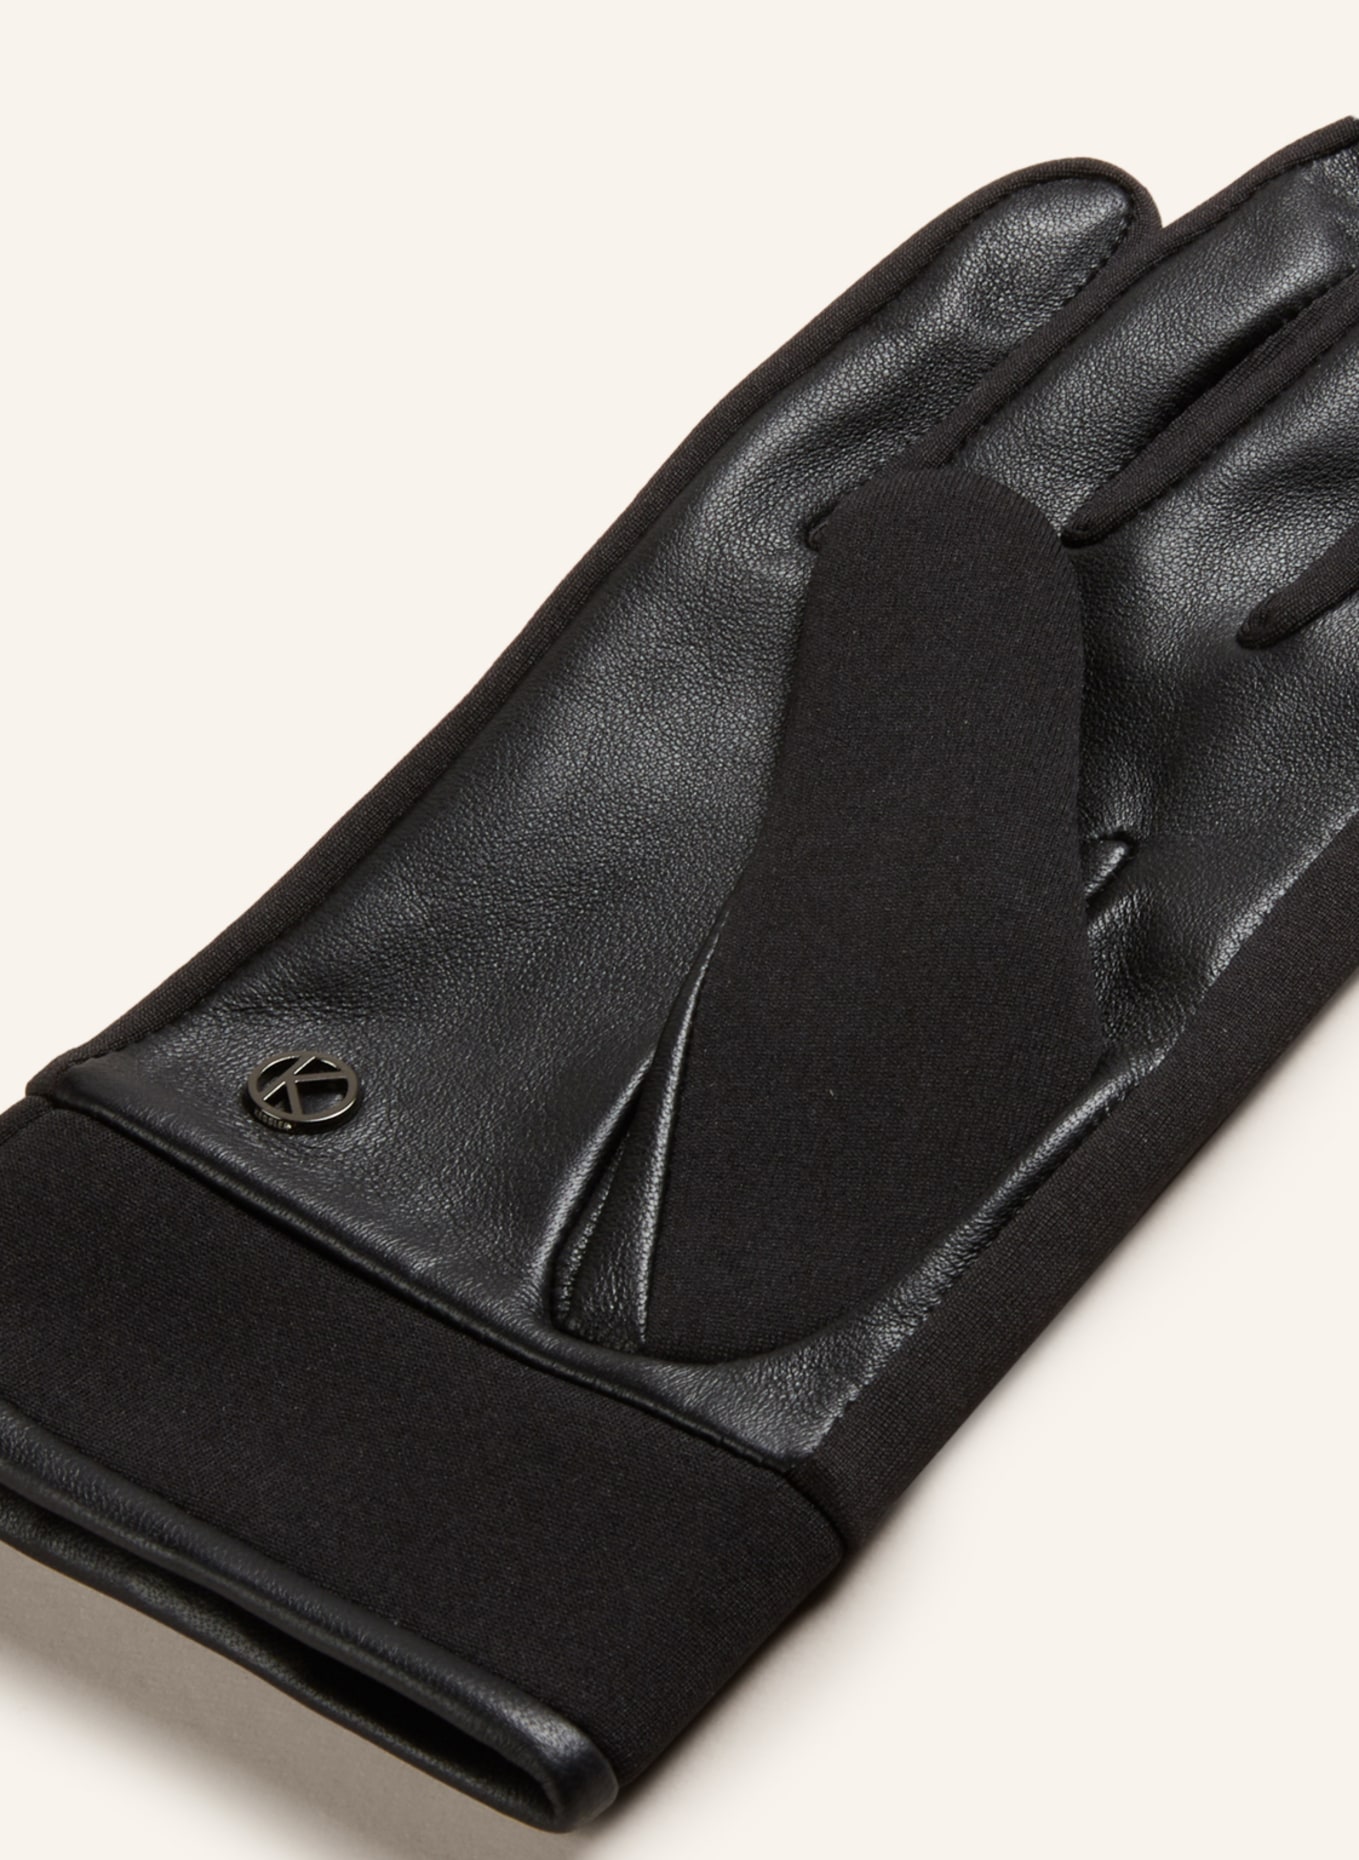 KESSLER Leather gloves, Color: BLACK (Image 2)